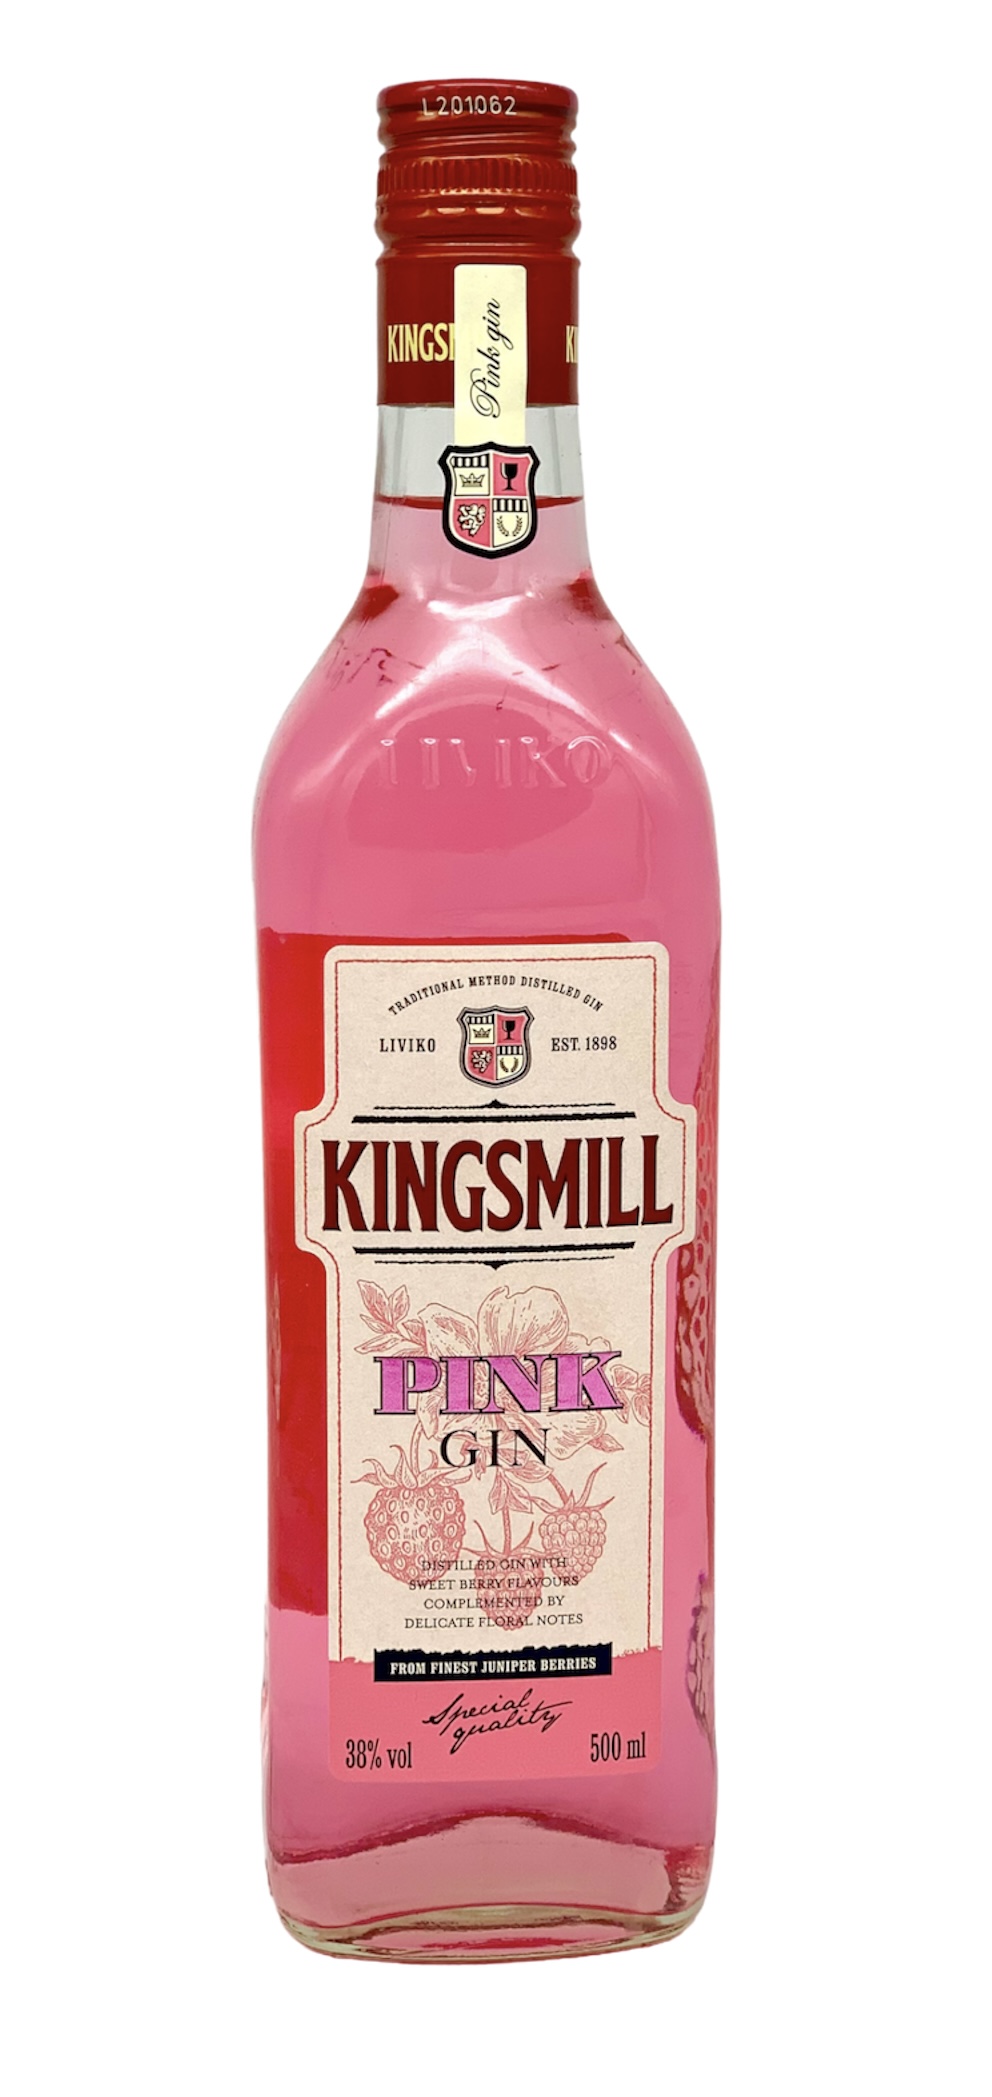 Kingsmill Pink Gin 500ml [38% Vol.] – Pinker Gin aus Estland für verführerischen Genuss 